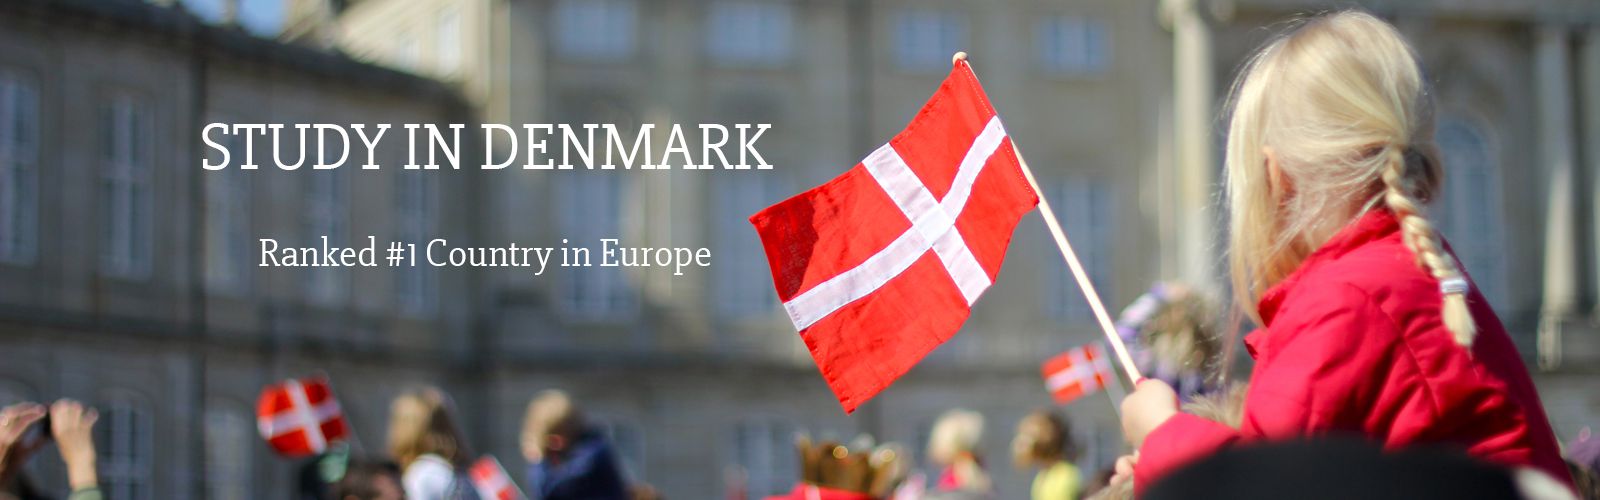 Study In Denmark Without IELTS | Study Visa For Denmark | Denmark